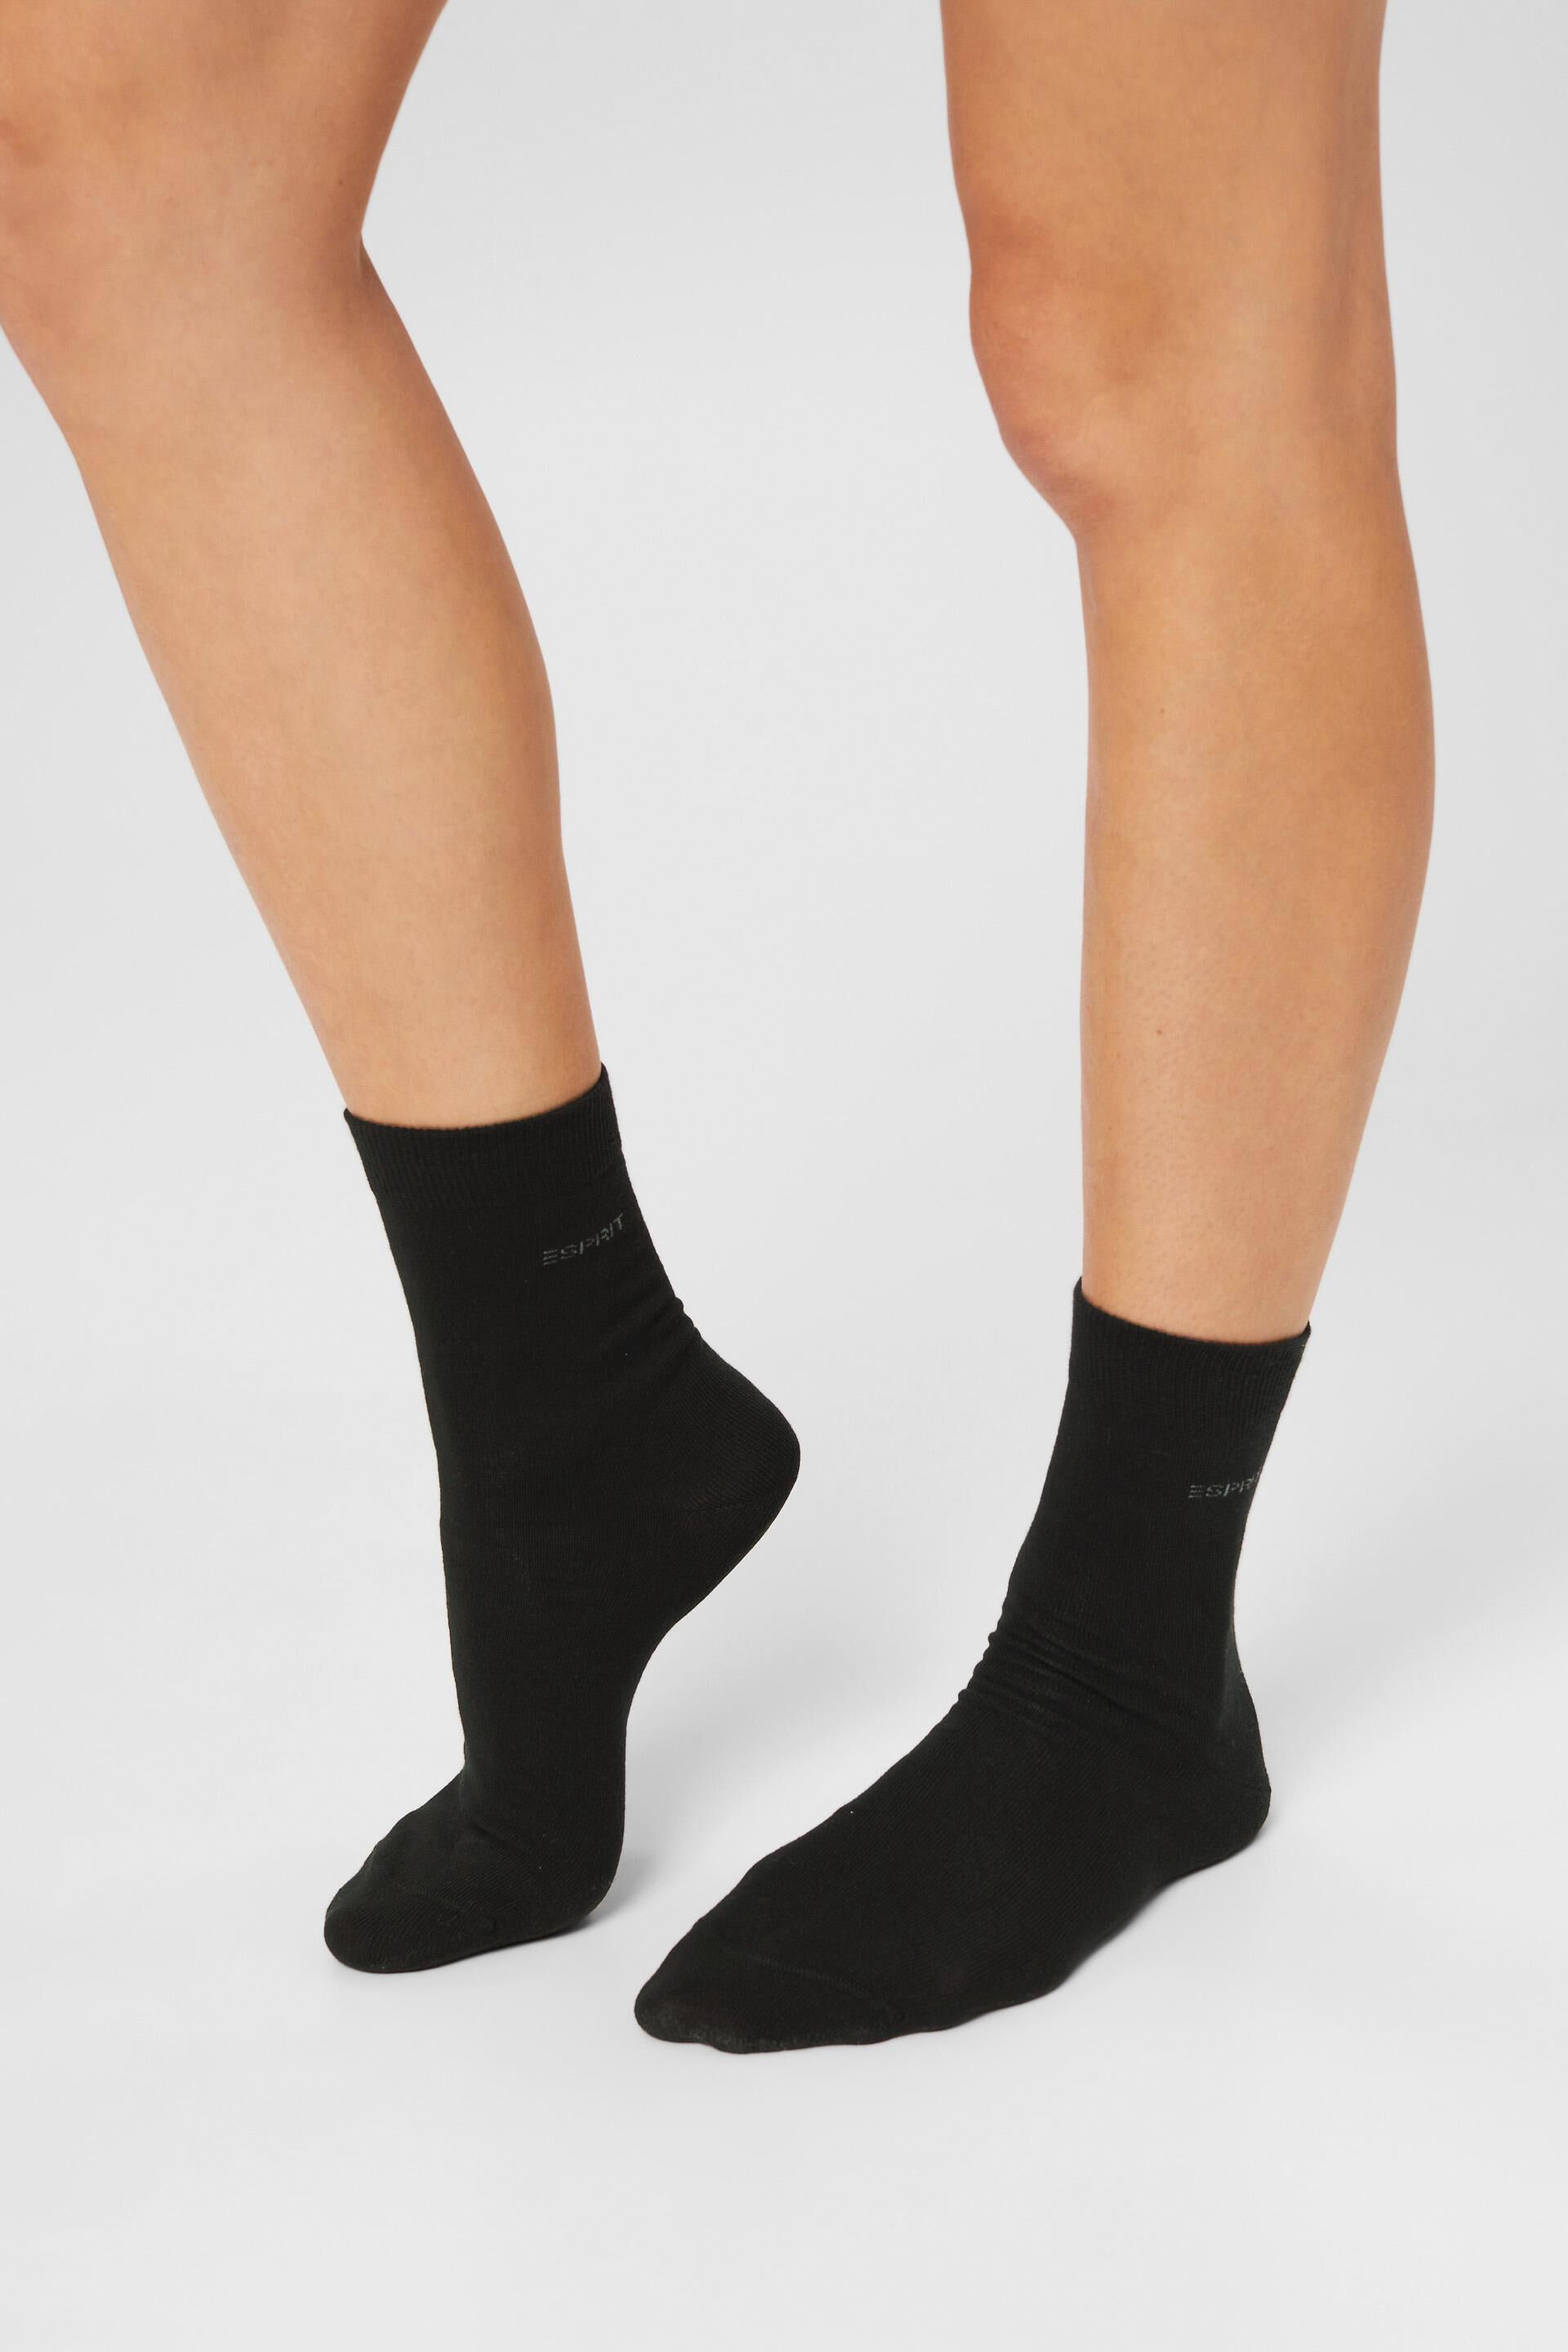 Esprit Online Store 5er-Pack einfarbige aus Bio-Baumwolle Socken